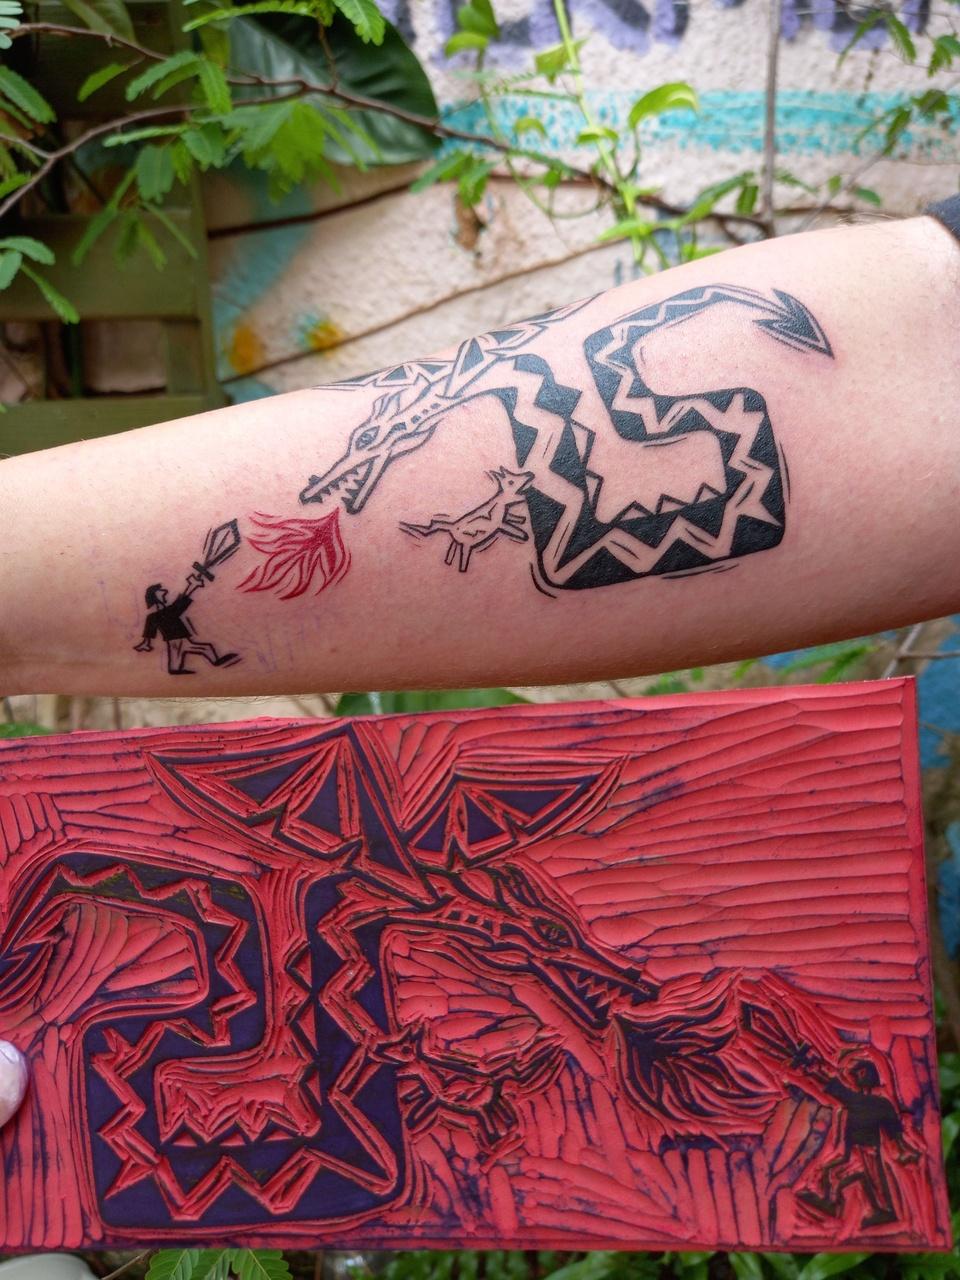 Seres míticos comuns na gravura fantástica dos cordéis figuram nas tatuagens realizadas por Lia Aguiar